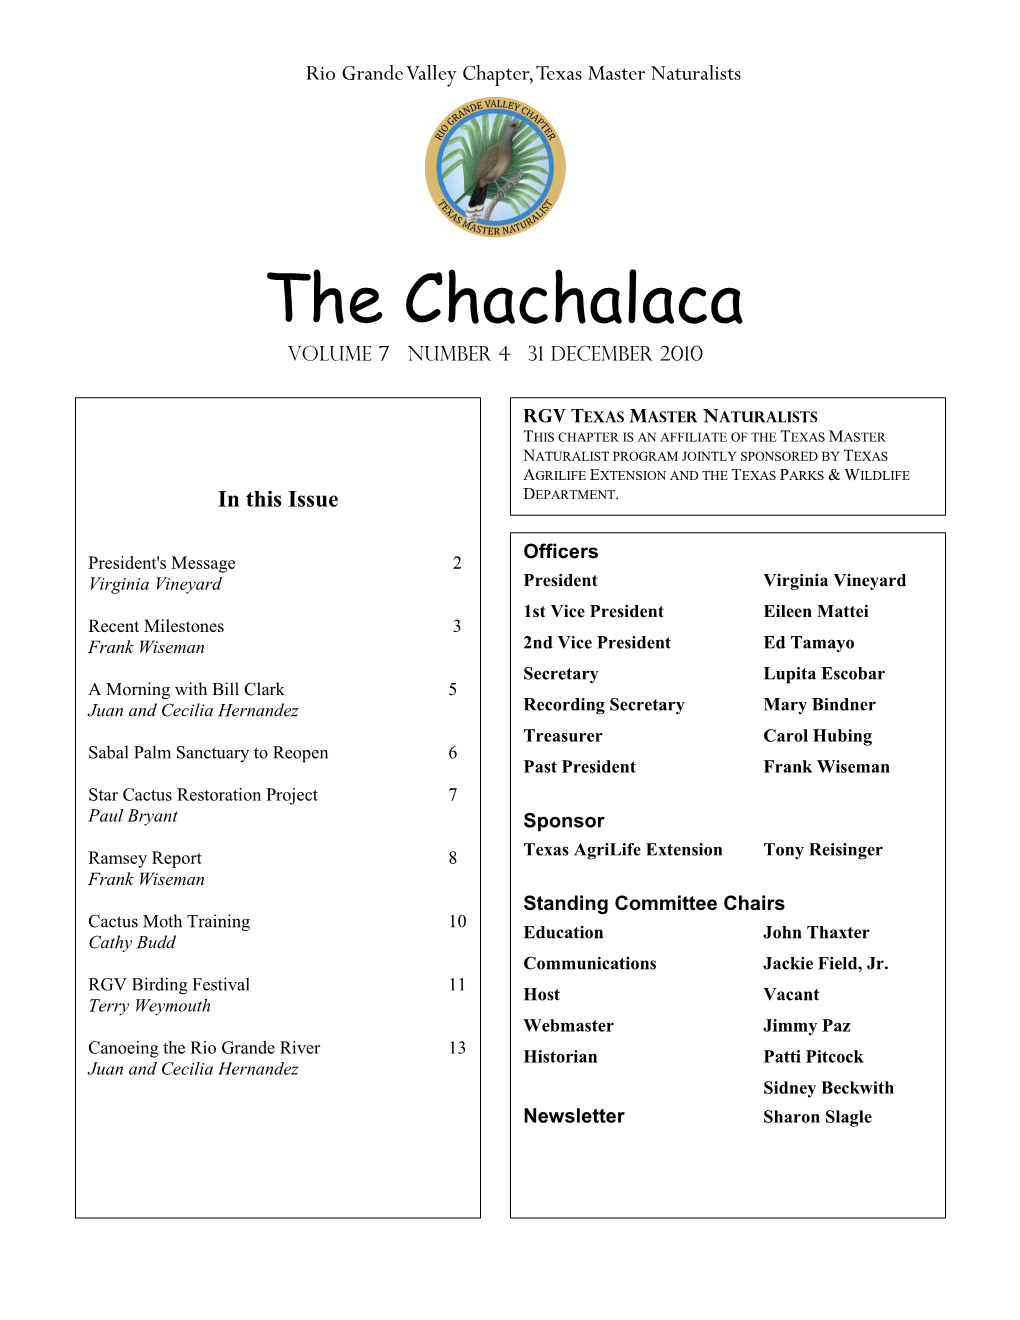 The Chachalaca Vol 7, No. 4, December, 2010